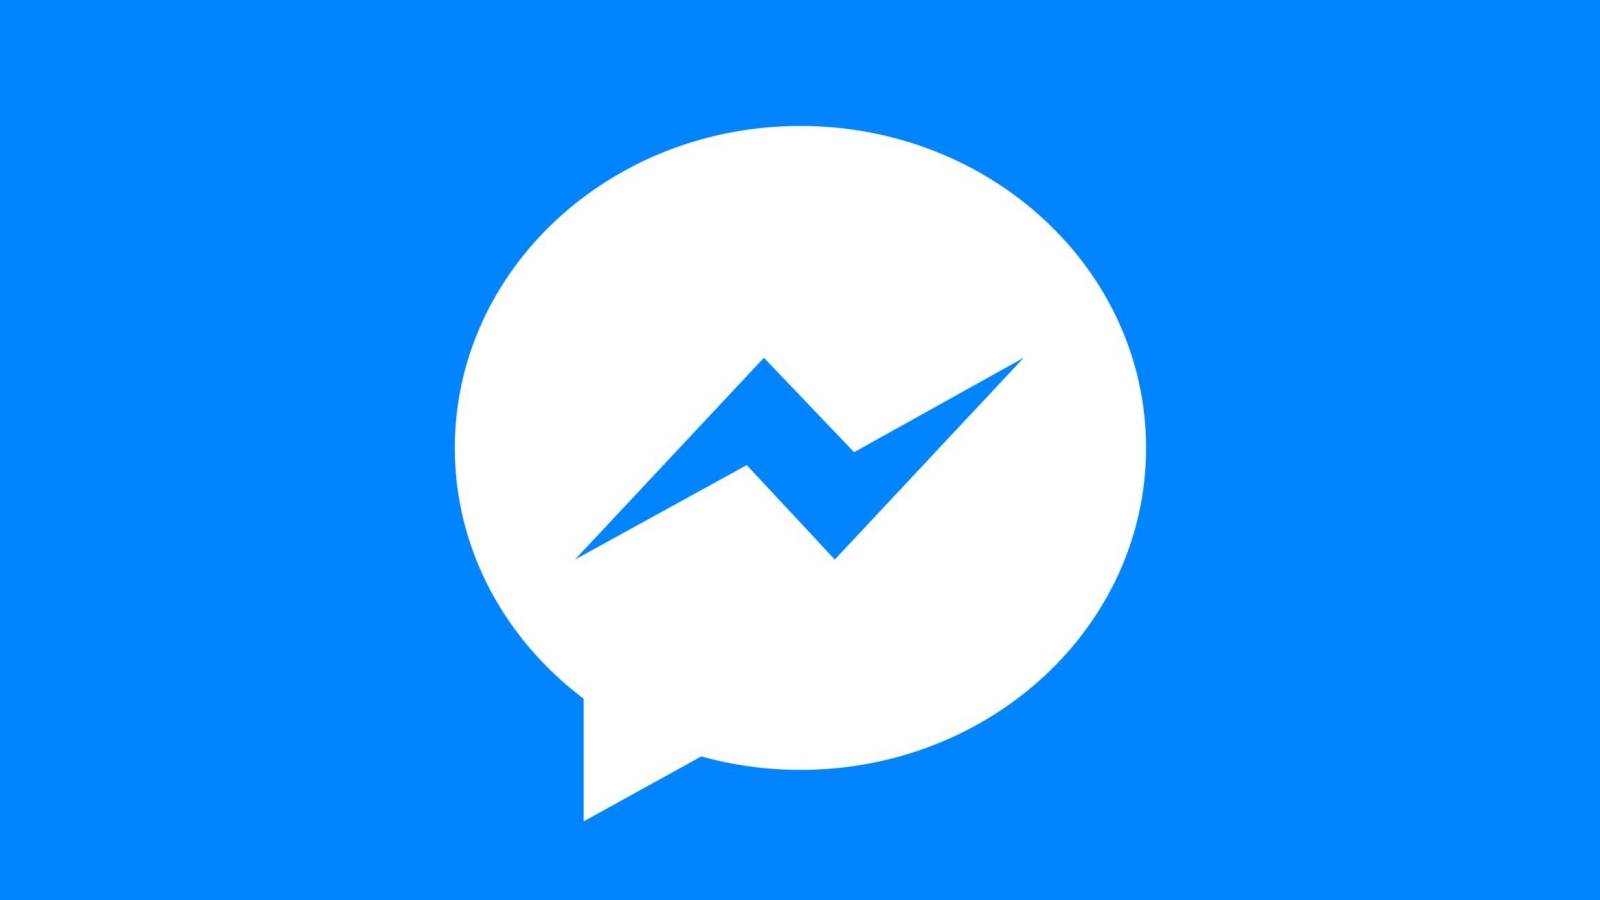 Facebook Messenger-update uitgebracht, welke veranderingen deze nu met zich meebrengt